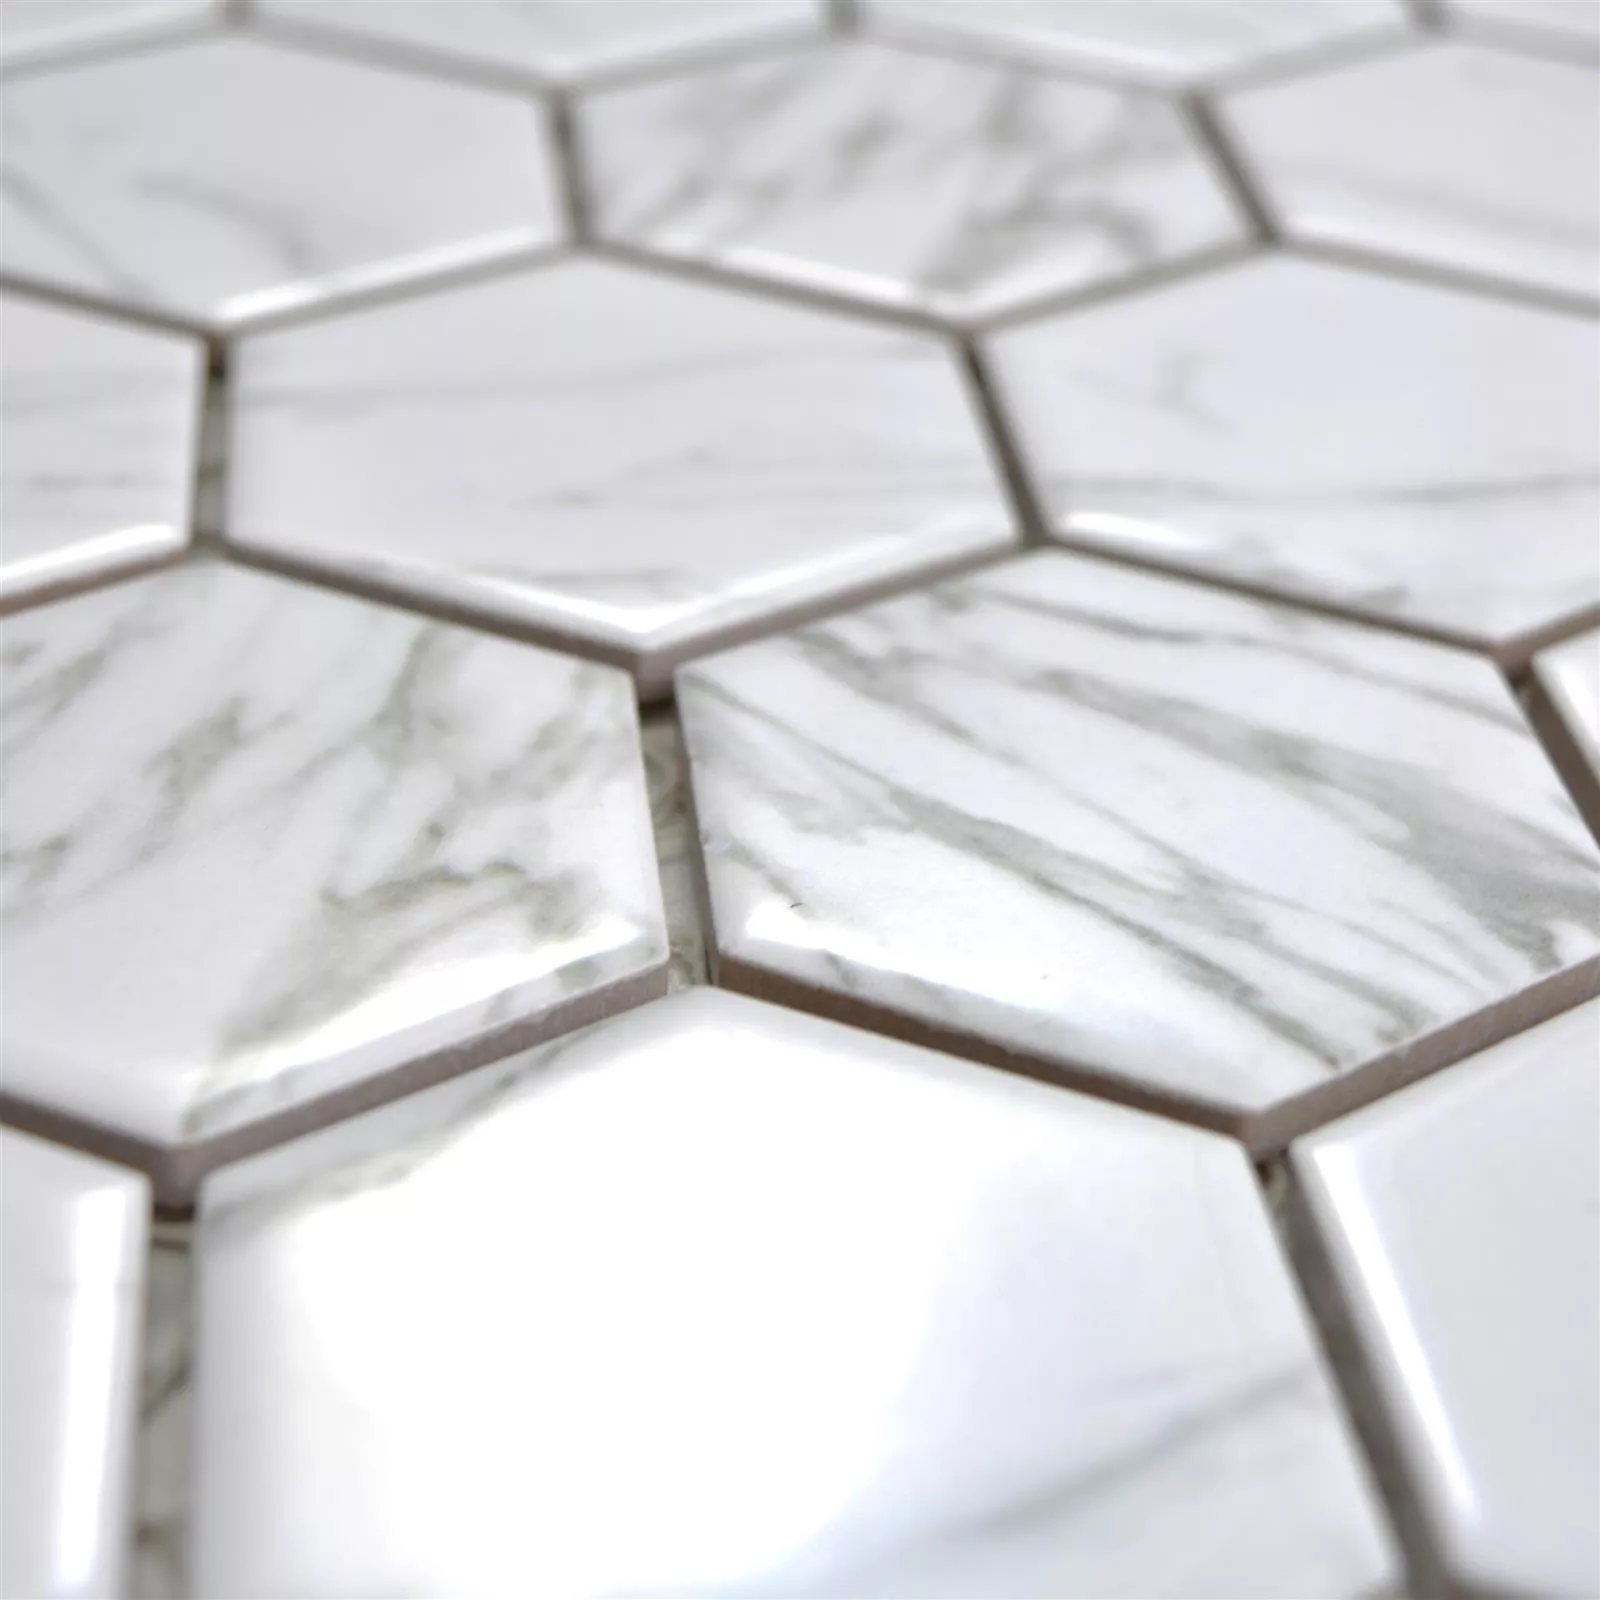 Ceramic Mosaic Mozart Hexagon White Glossy